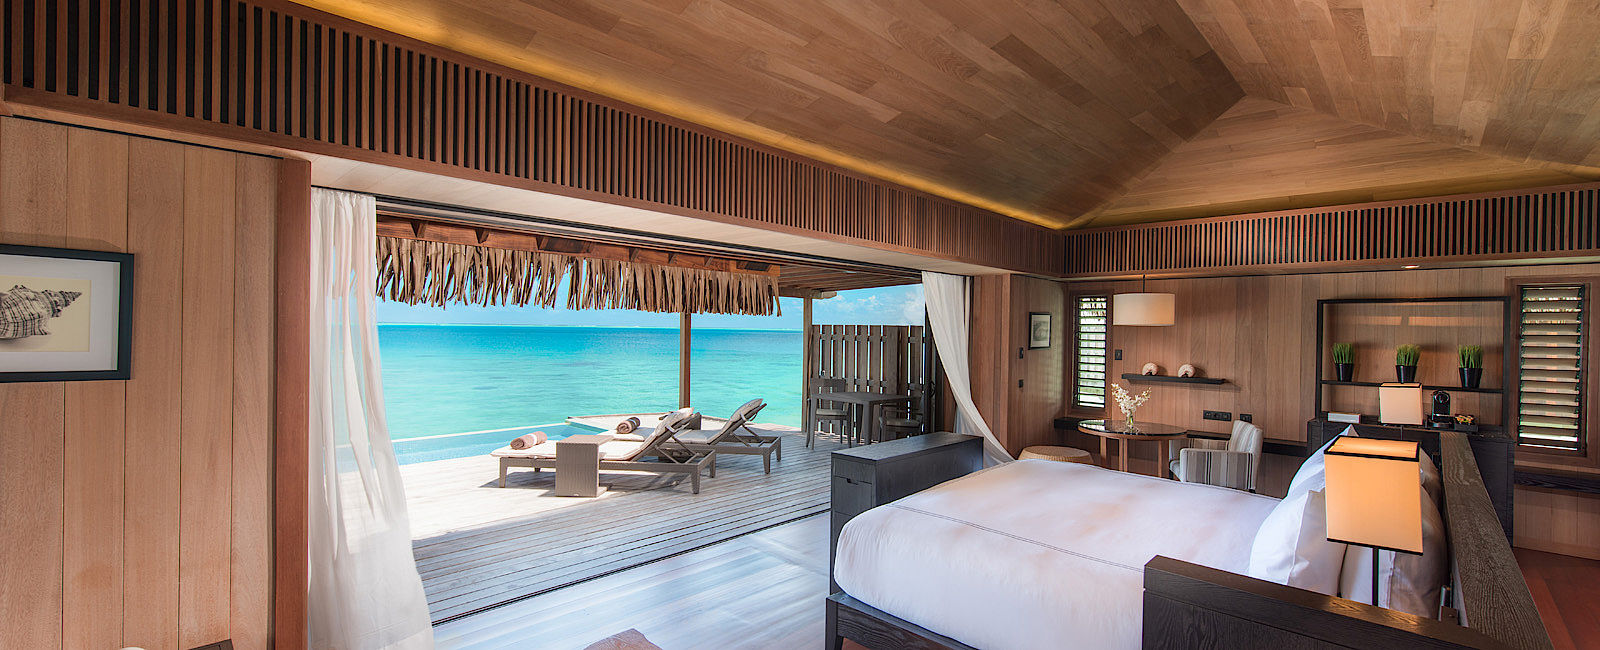 HOTELERÖFFNUNG NEWS
 Luxusmarke debütiert auf Bora Bora 
